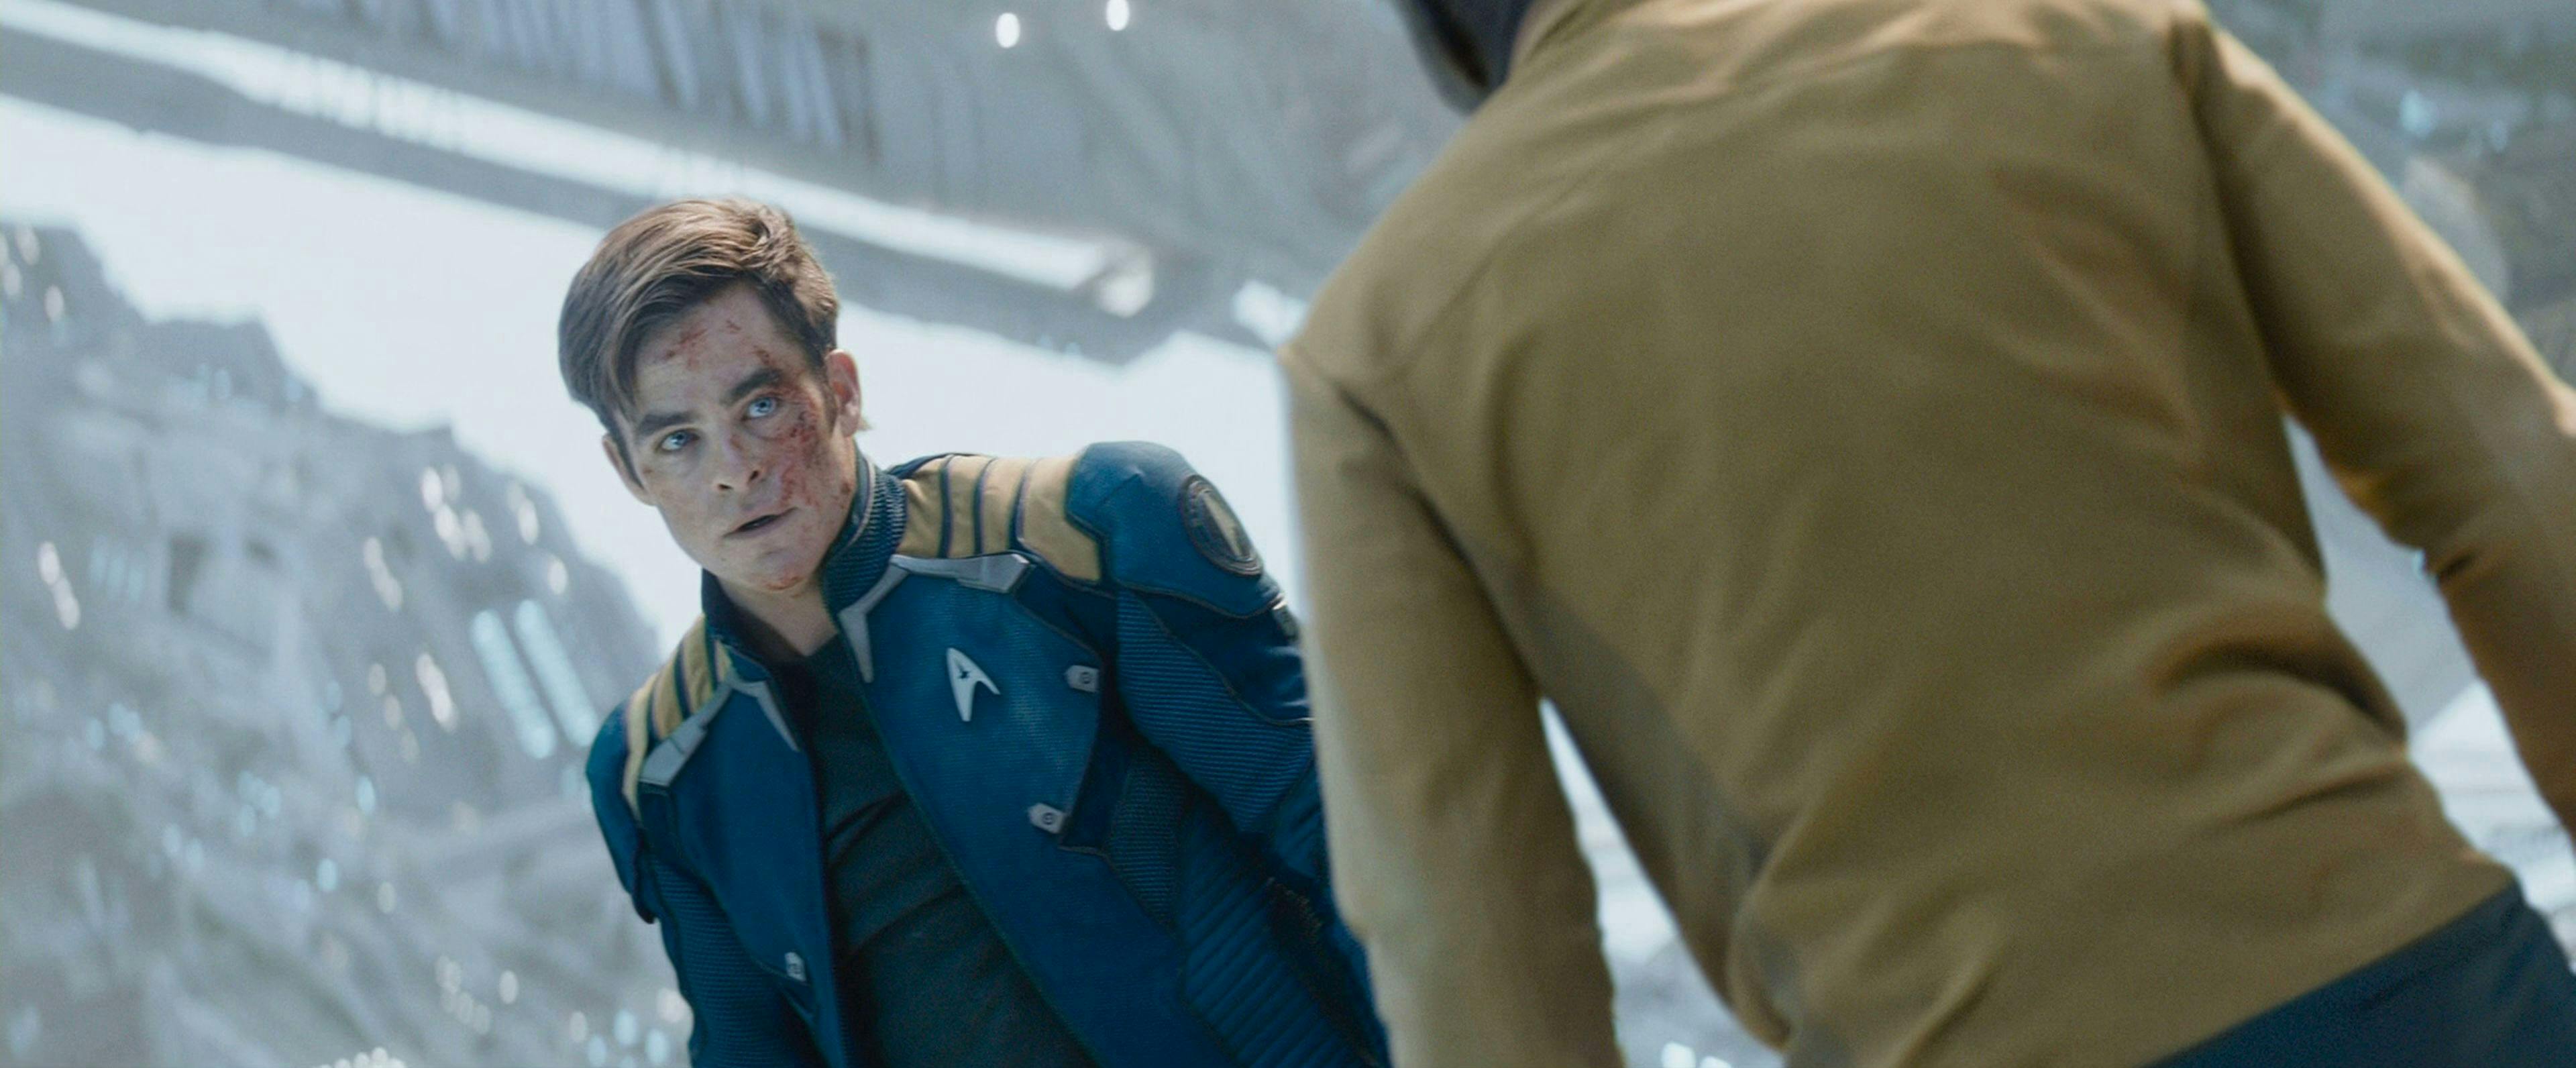 James Kirk confronts Krall in Star Trek Beyond